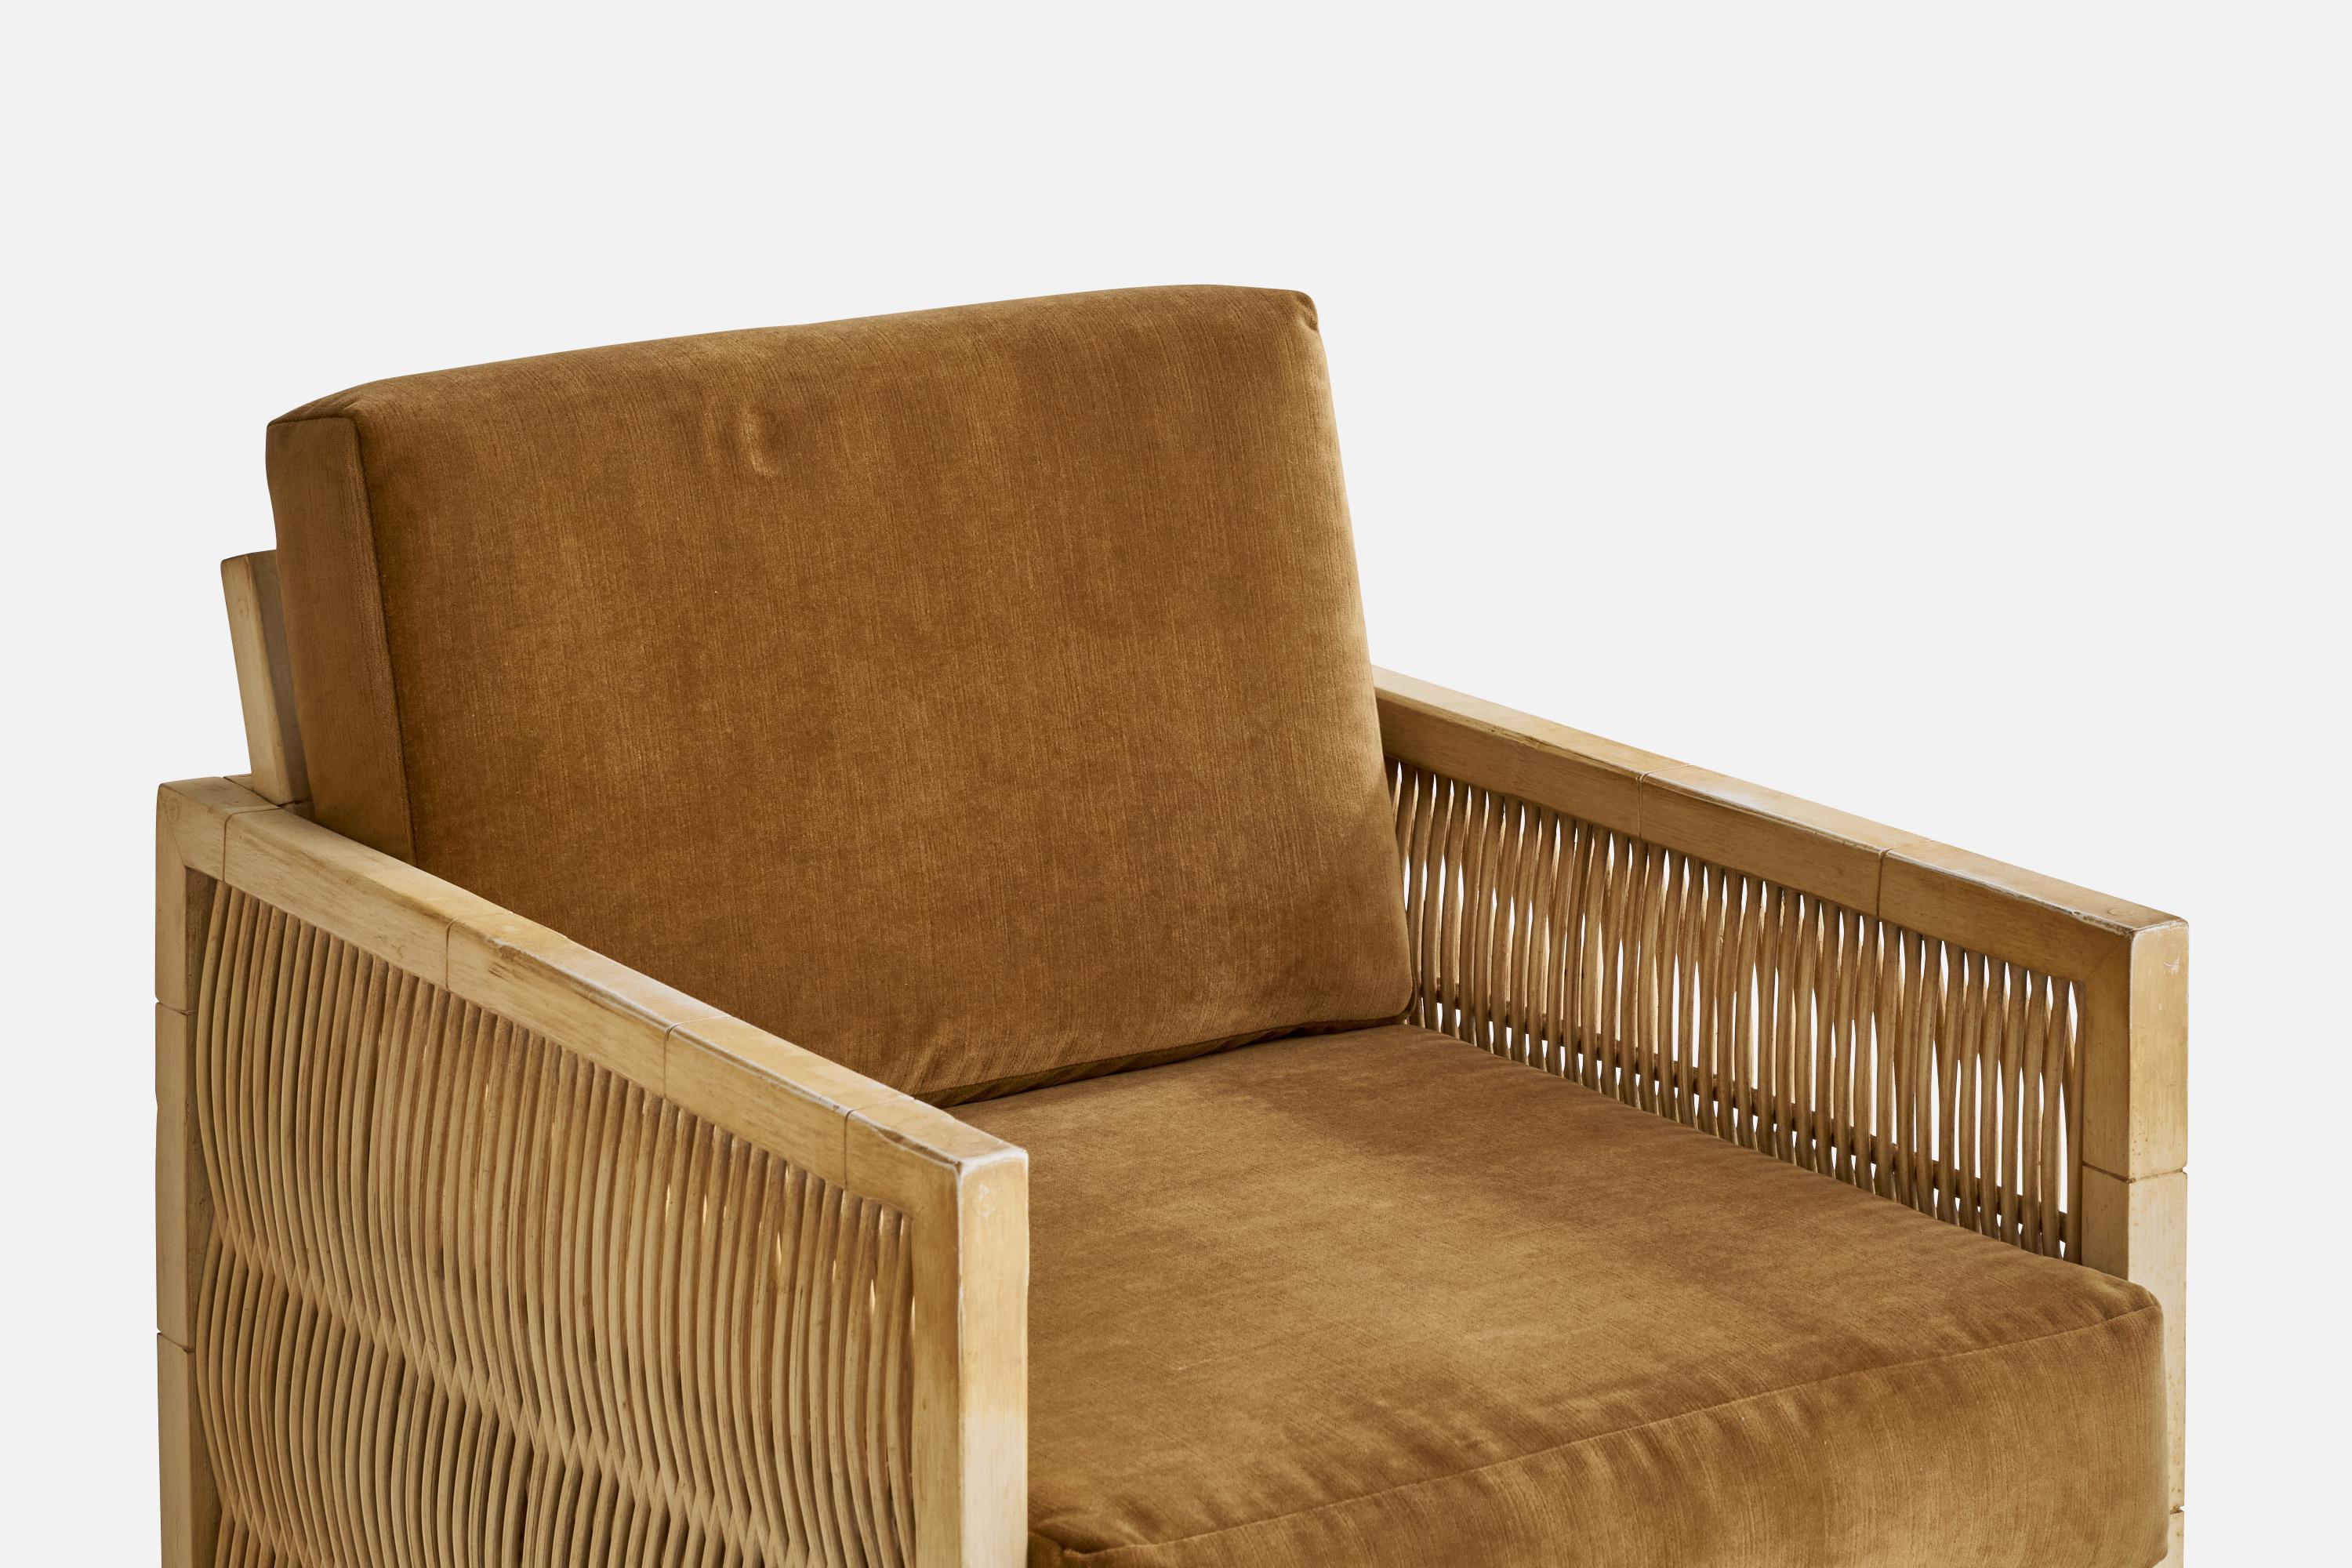 American Designer, Lounge Chairs, Oak, Bamboo, Velvet, USA, 1960s For Sale 1